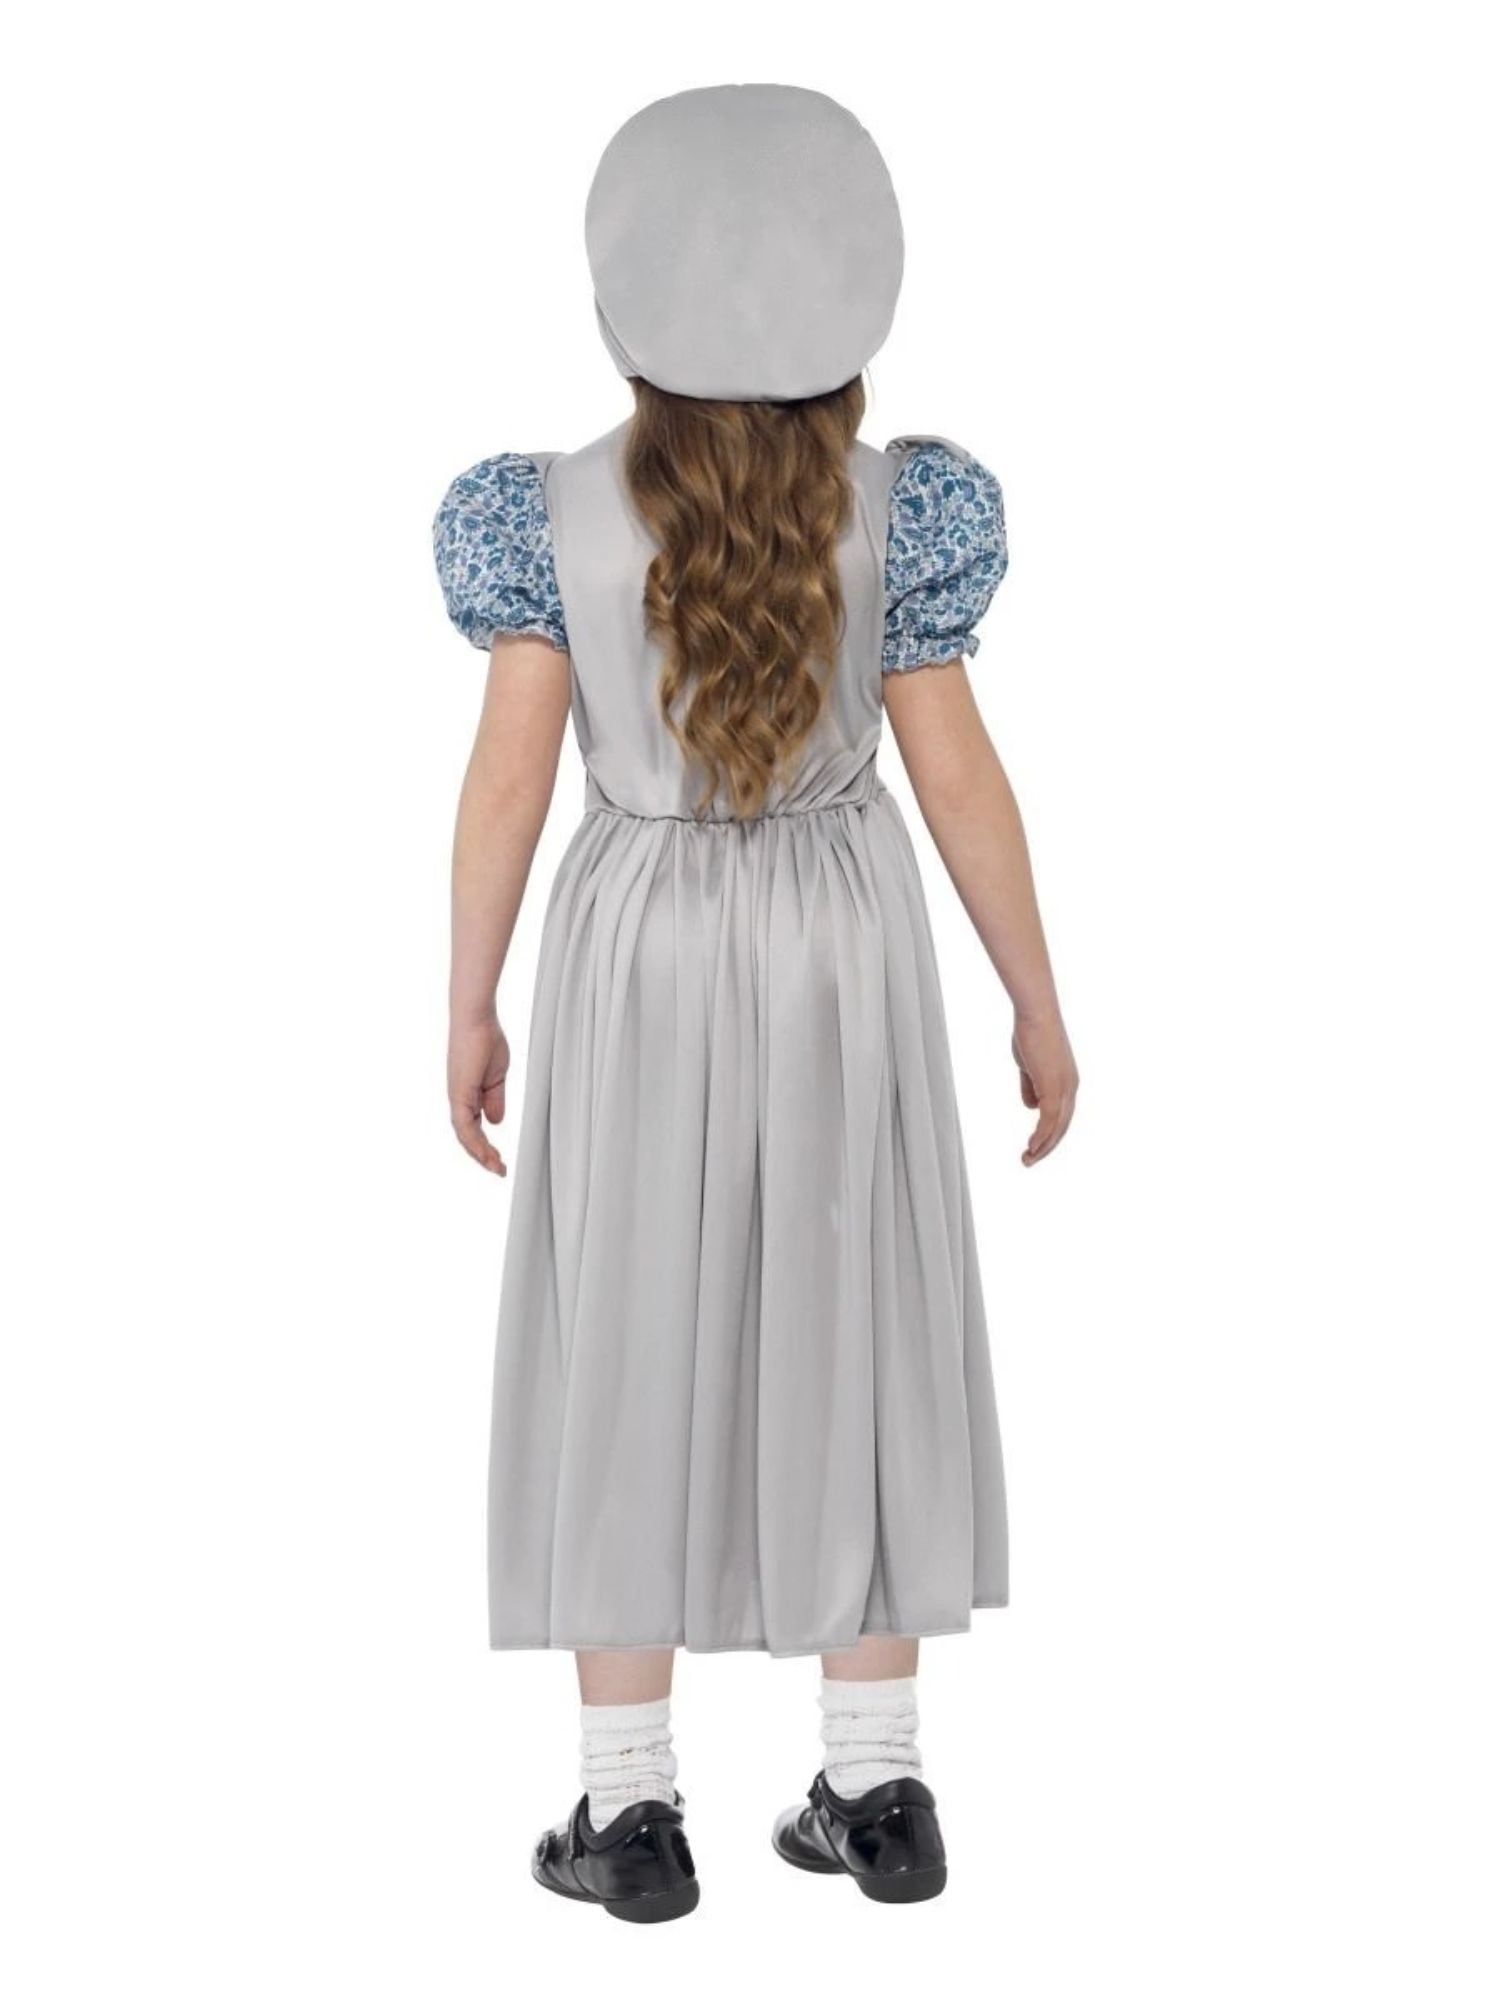 Smiffys Victorian Nanny Costume